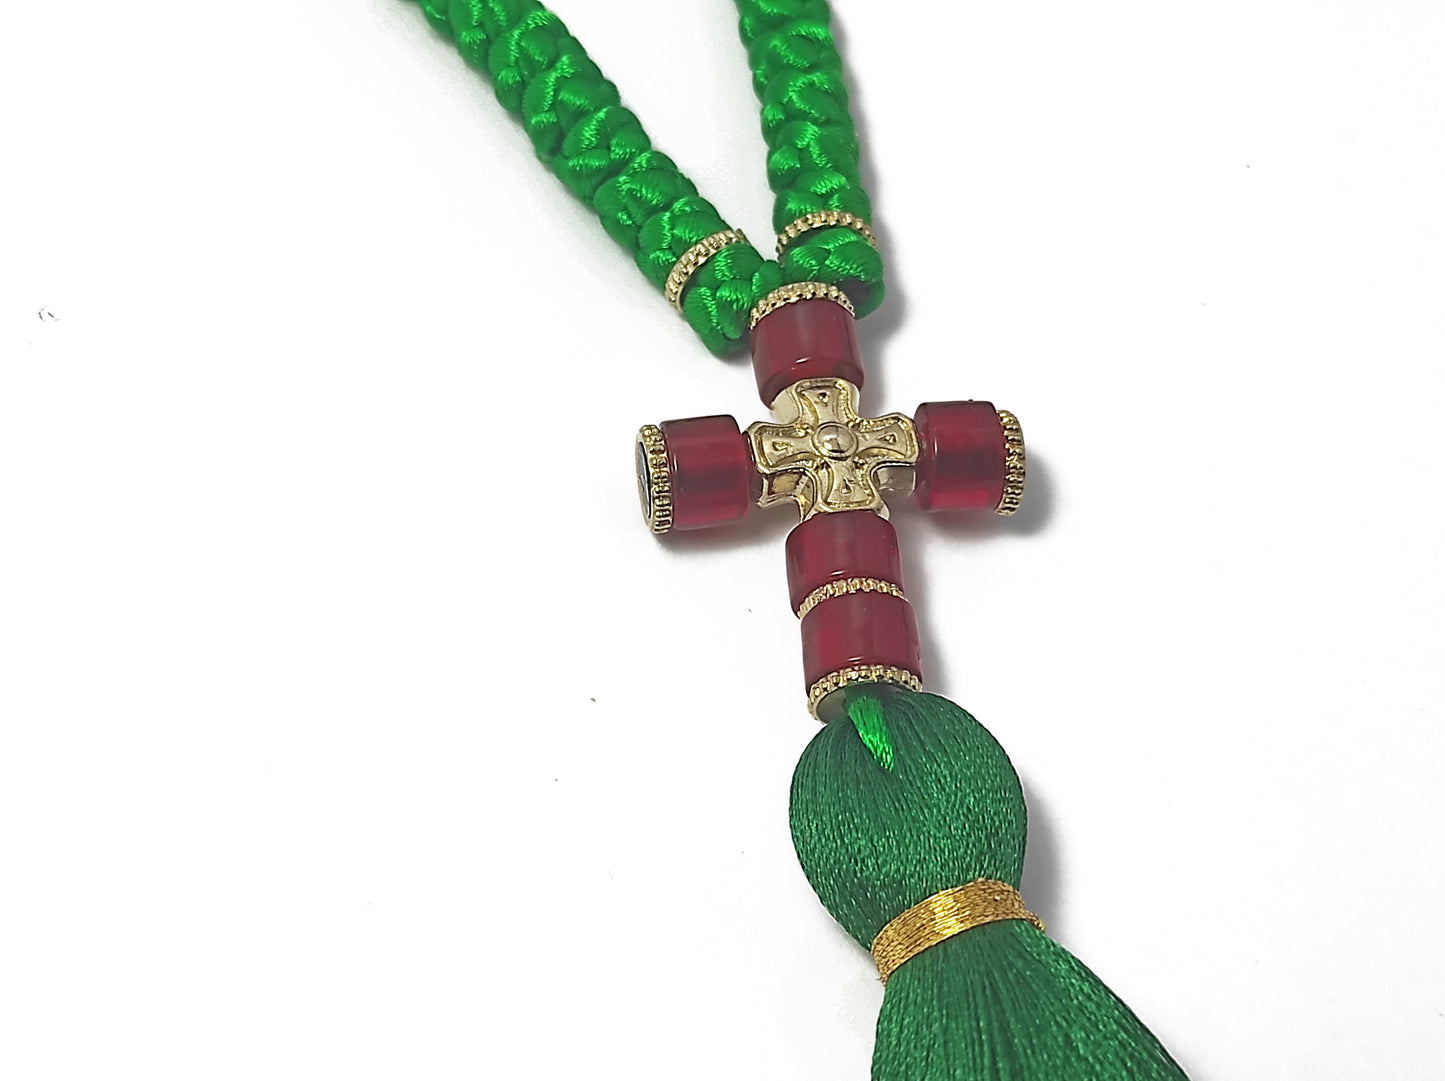 Αγιορείτικο 100αρι Κομποσχοίνι Προσευχής σε Πράσινο Χρώμα  [Δ09]